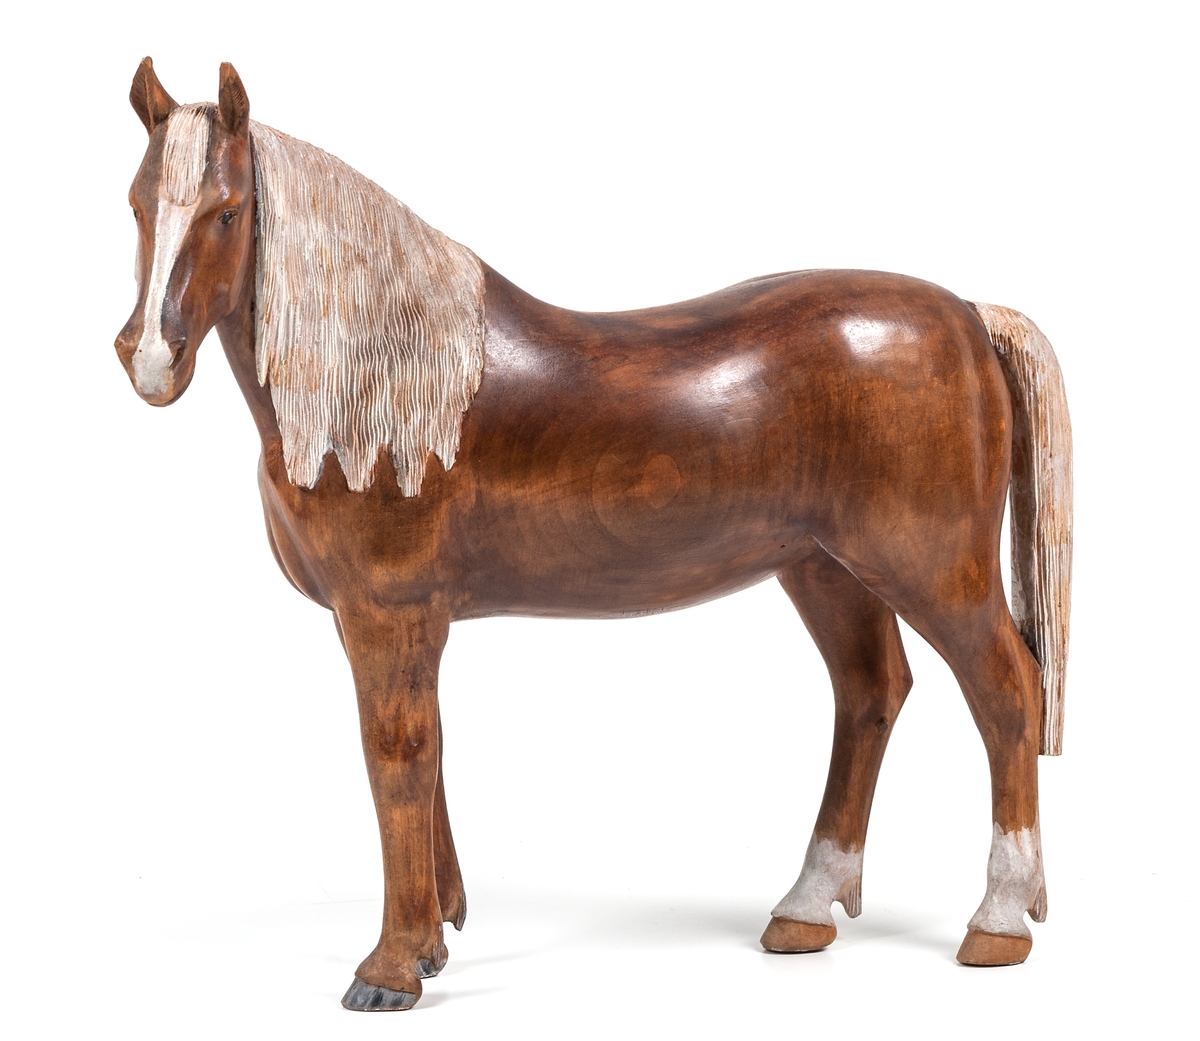 Träskulptur "Häst" av Lars From (1867-1945) från Hälsingland. Naturalistisk häst. Brun med vit man och svans. Vita strumpor på bakbenen. From brukar signera sina hästar med initialerna LF på någon av de bakre hovarna. Denna häst verkar vara osignerad.